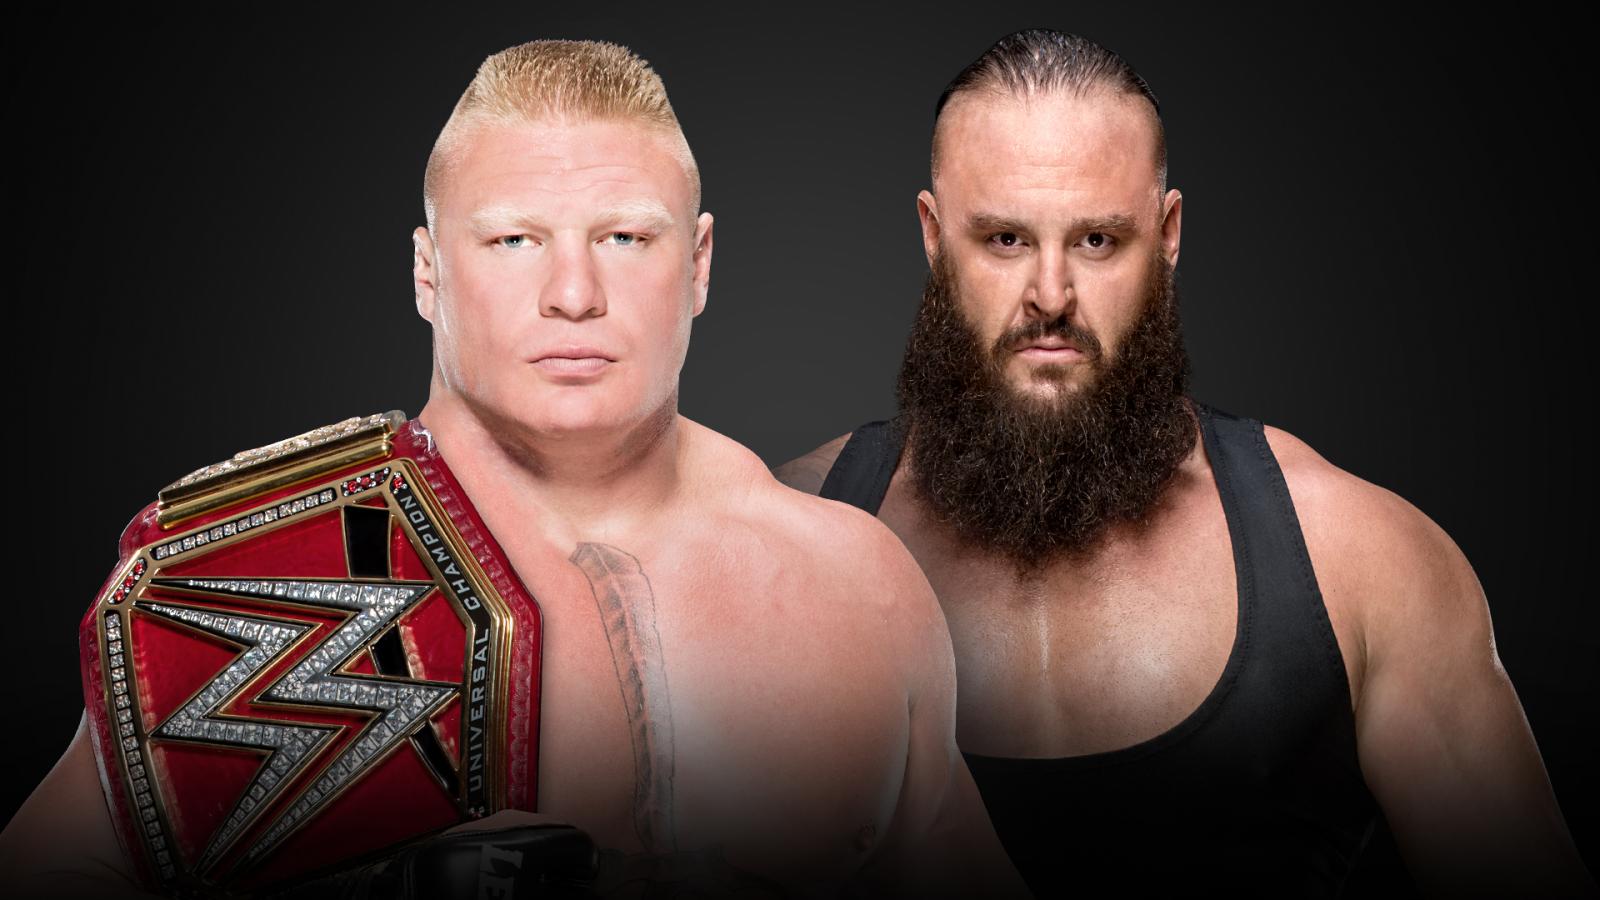 Braun Strowman & Brock Lesnar Wrestler Wallpapers - Wwe Survivor Series 2017 Matches - HD Wallpaper 